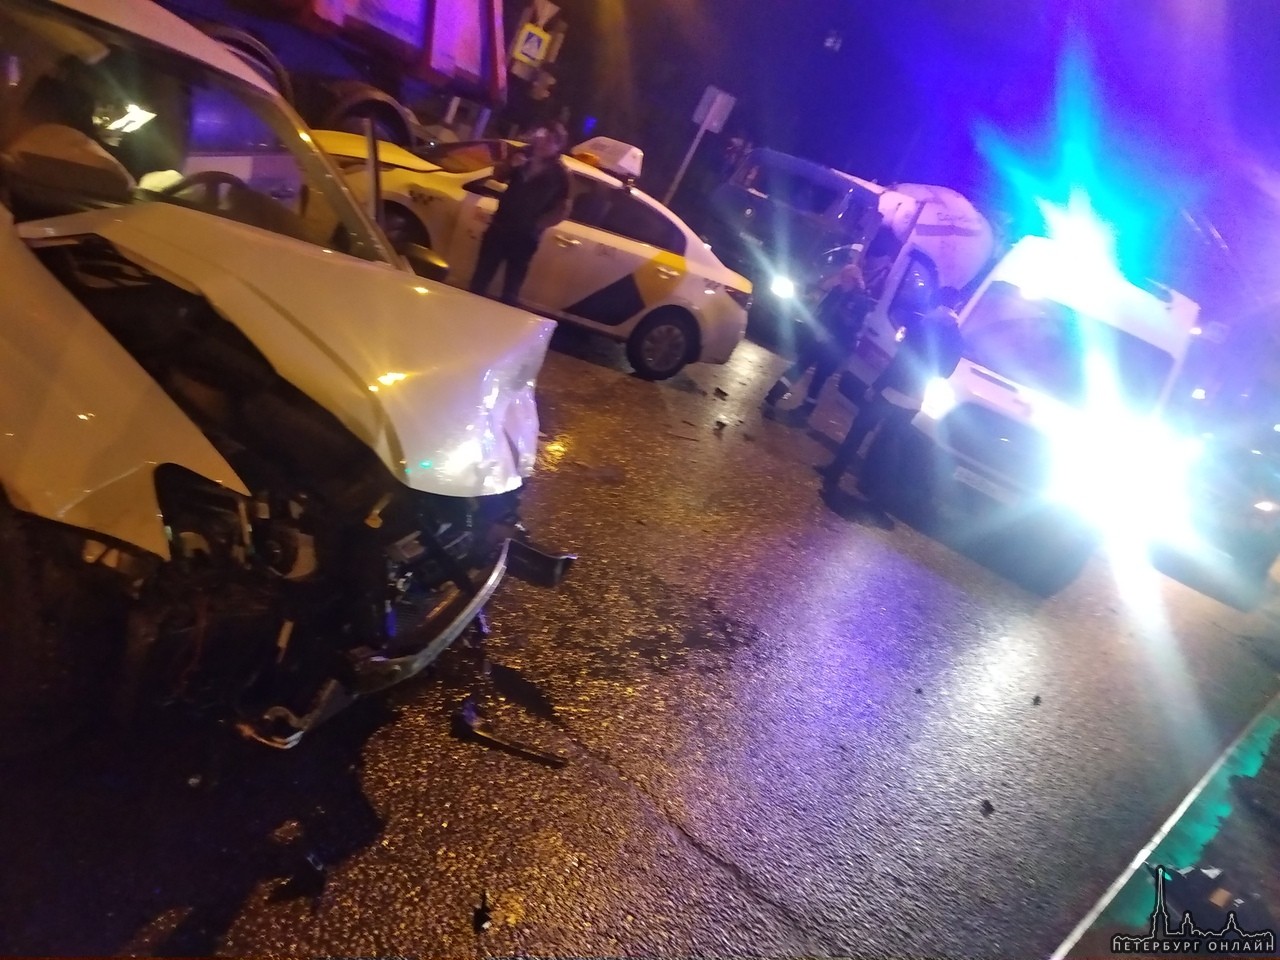 Авария на Кантемировской 37. 2 такси и Mercedes, последний пострадал меньше всех, а не виновный такс...